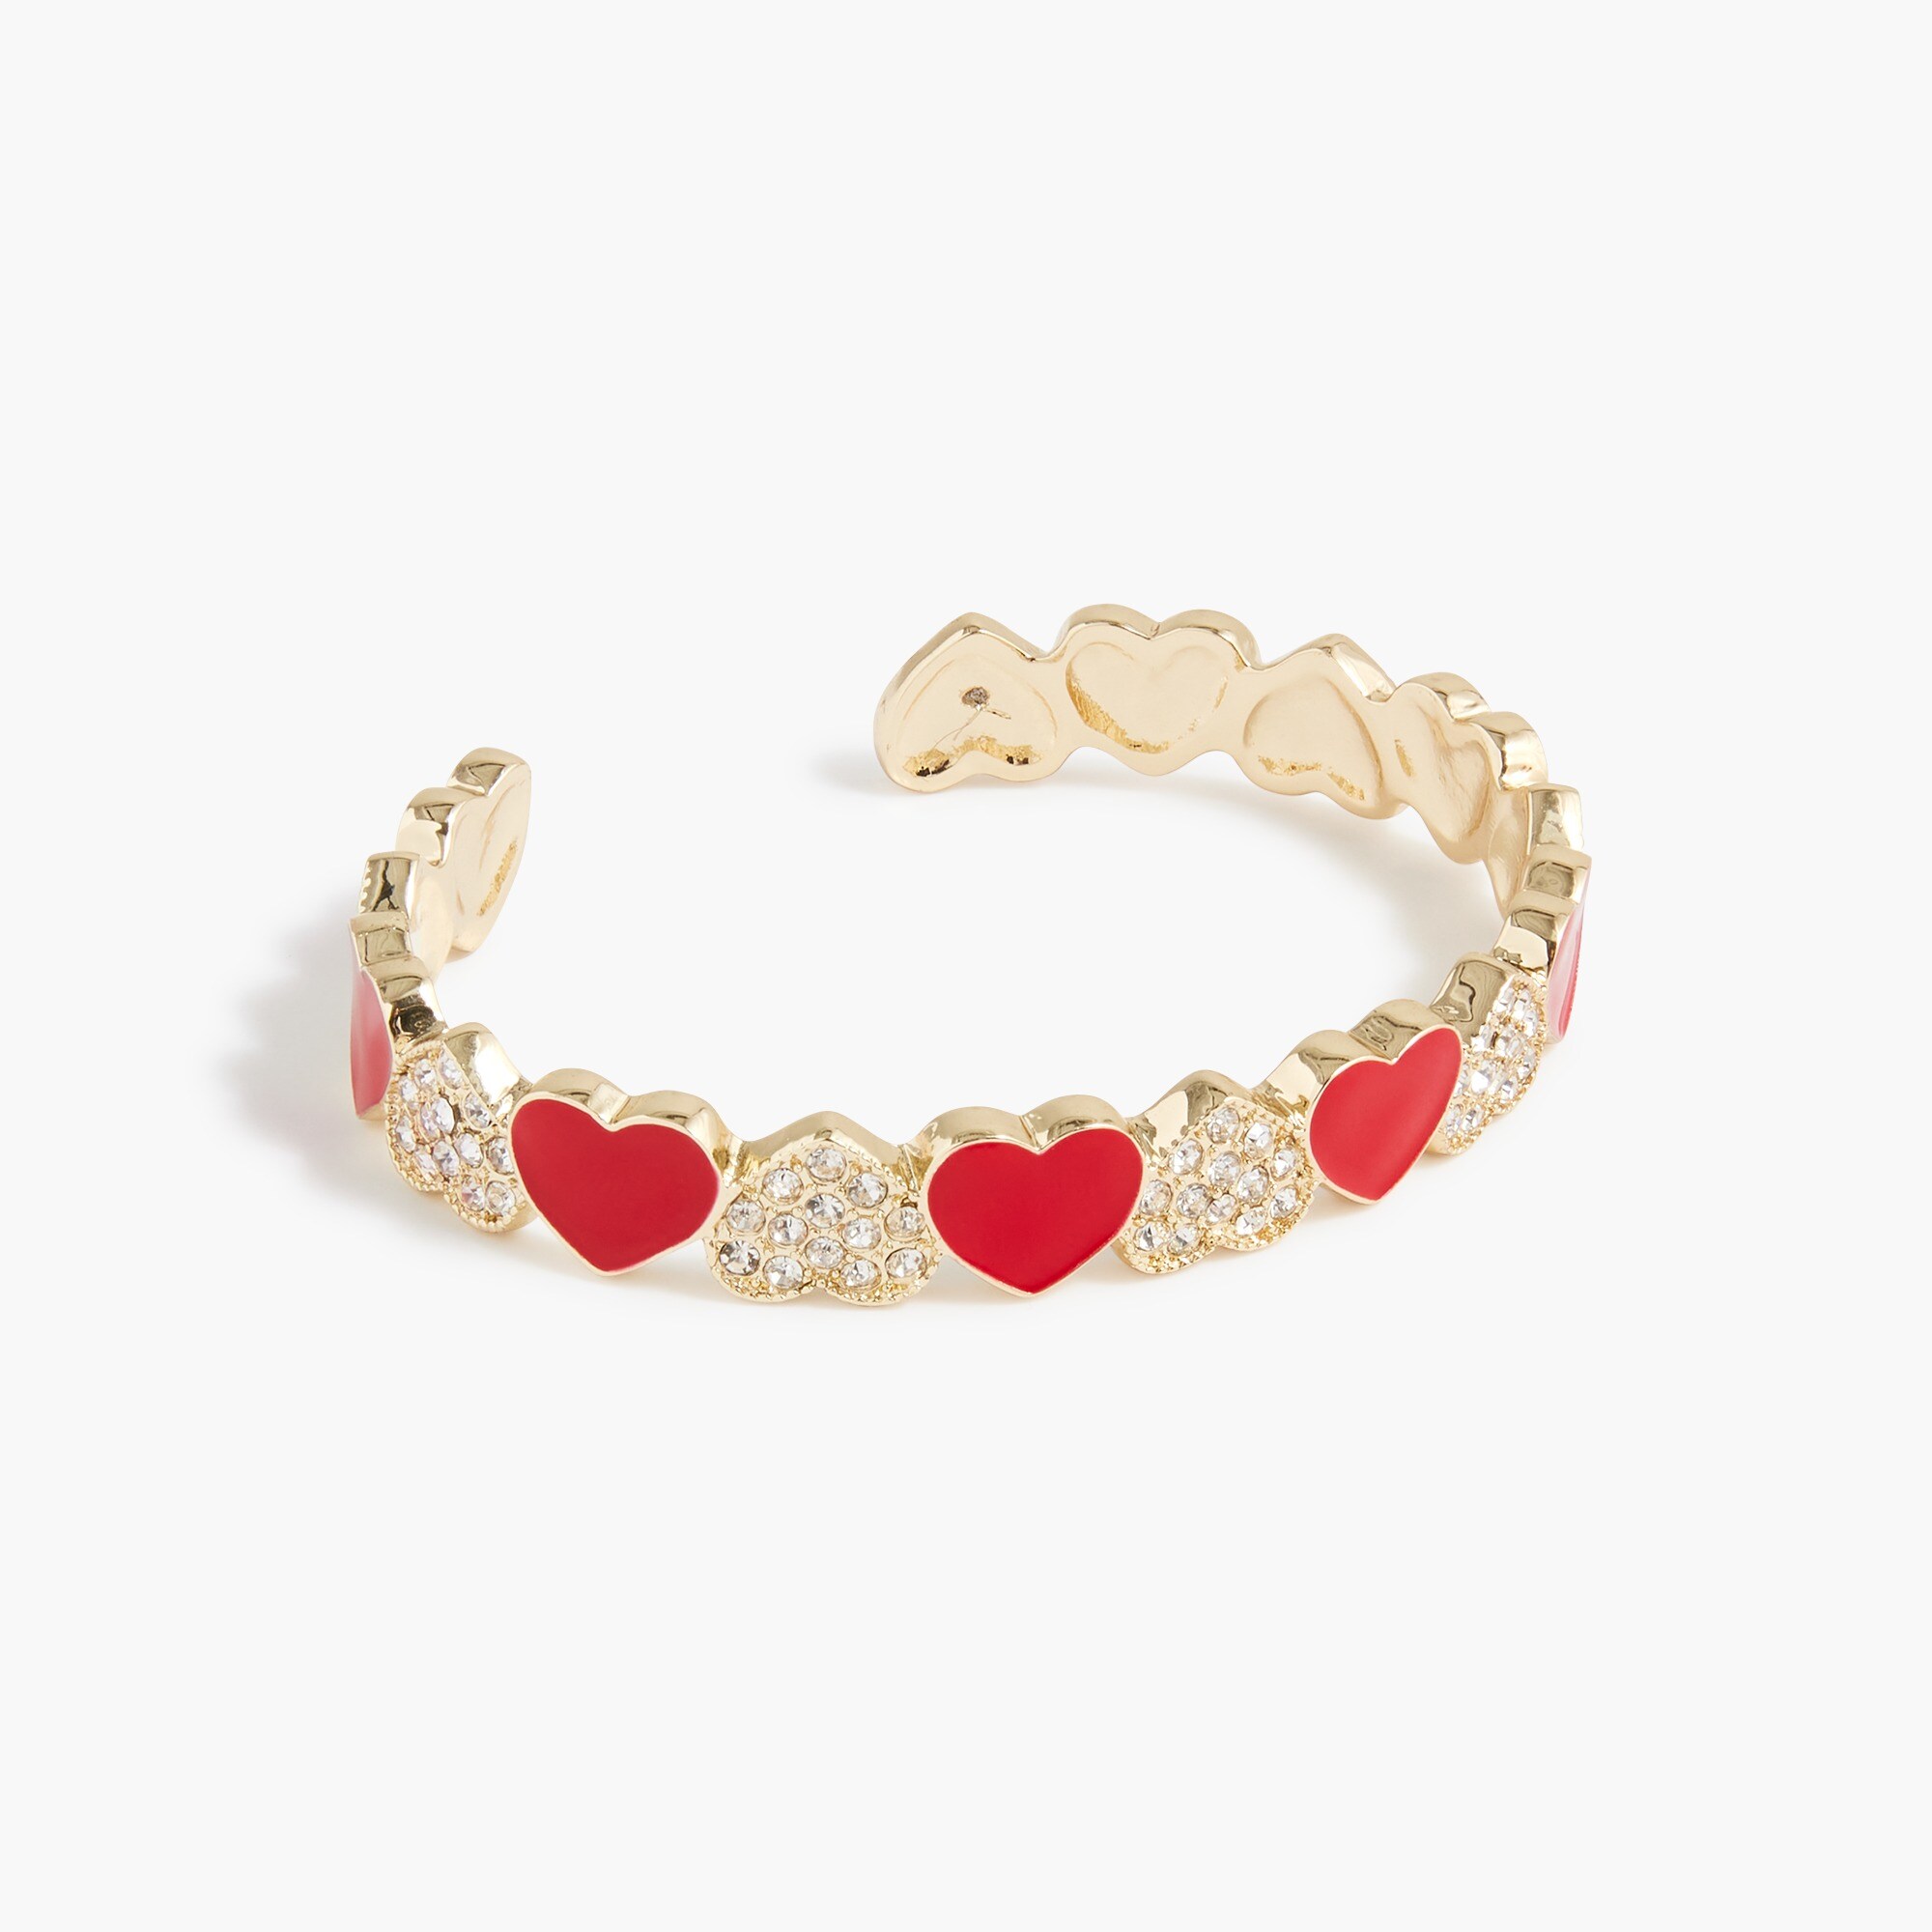  Heart cuff bracelet